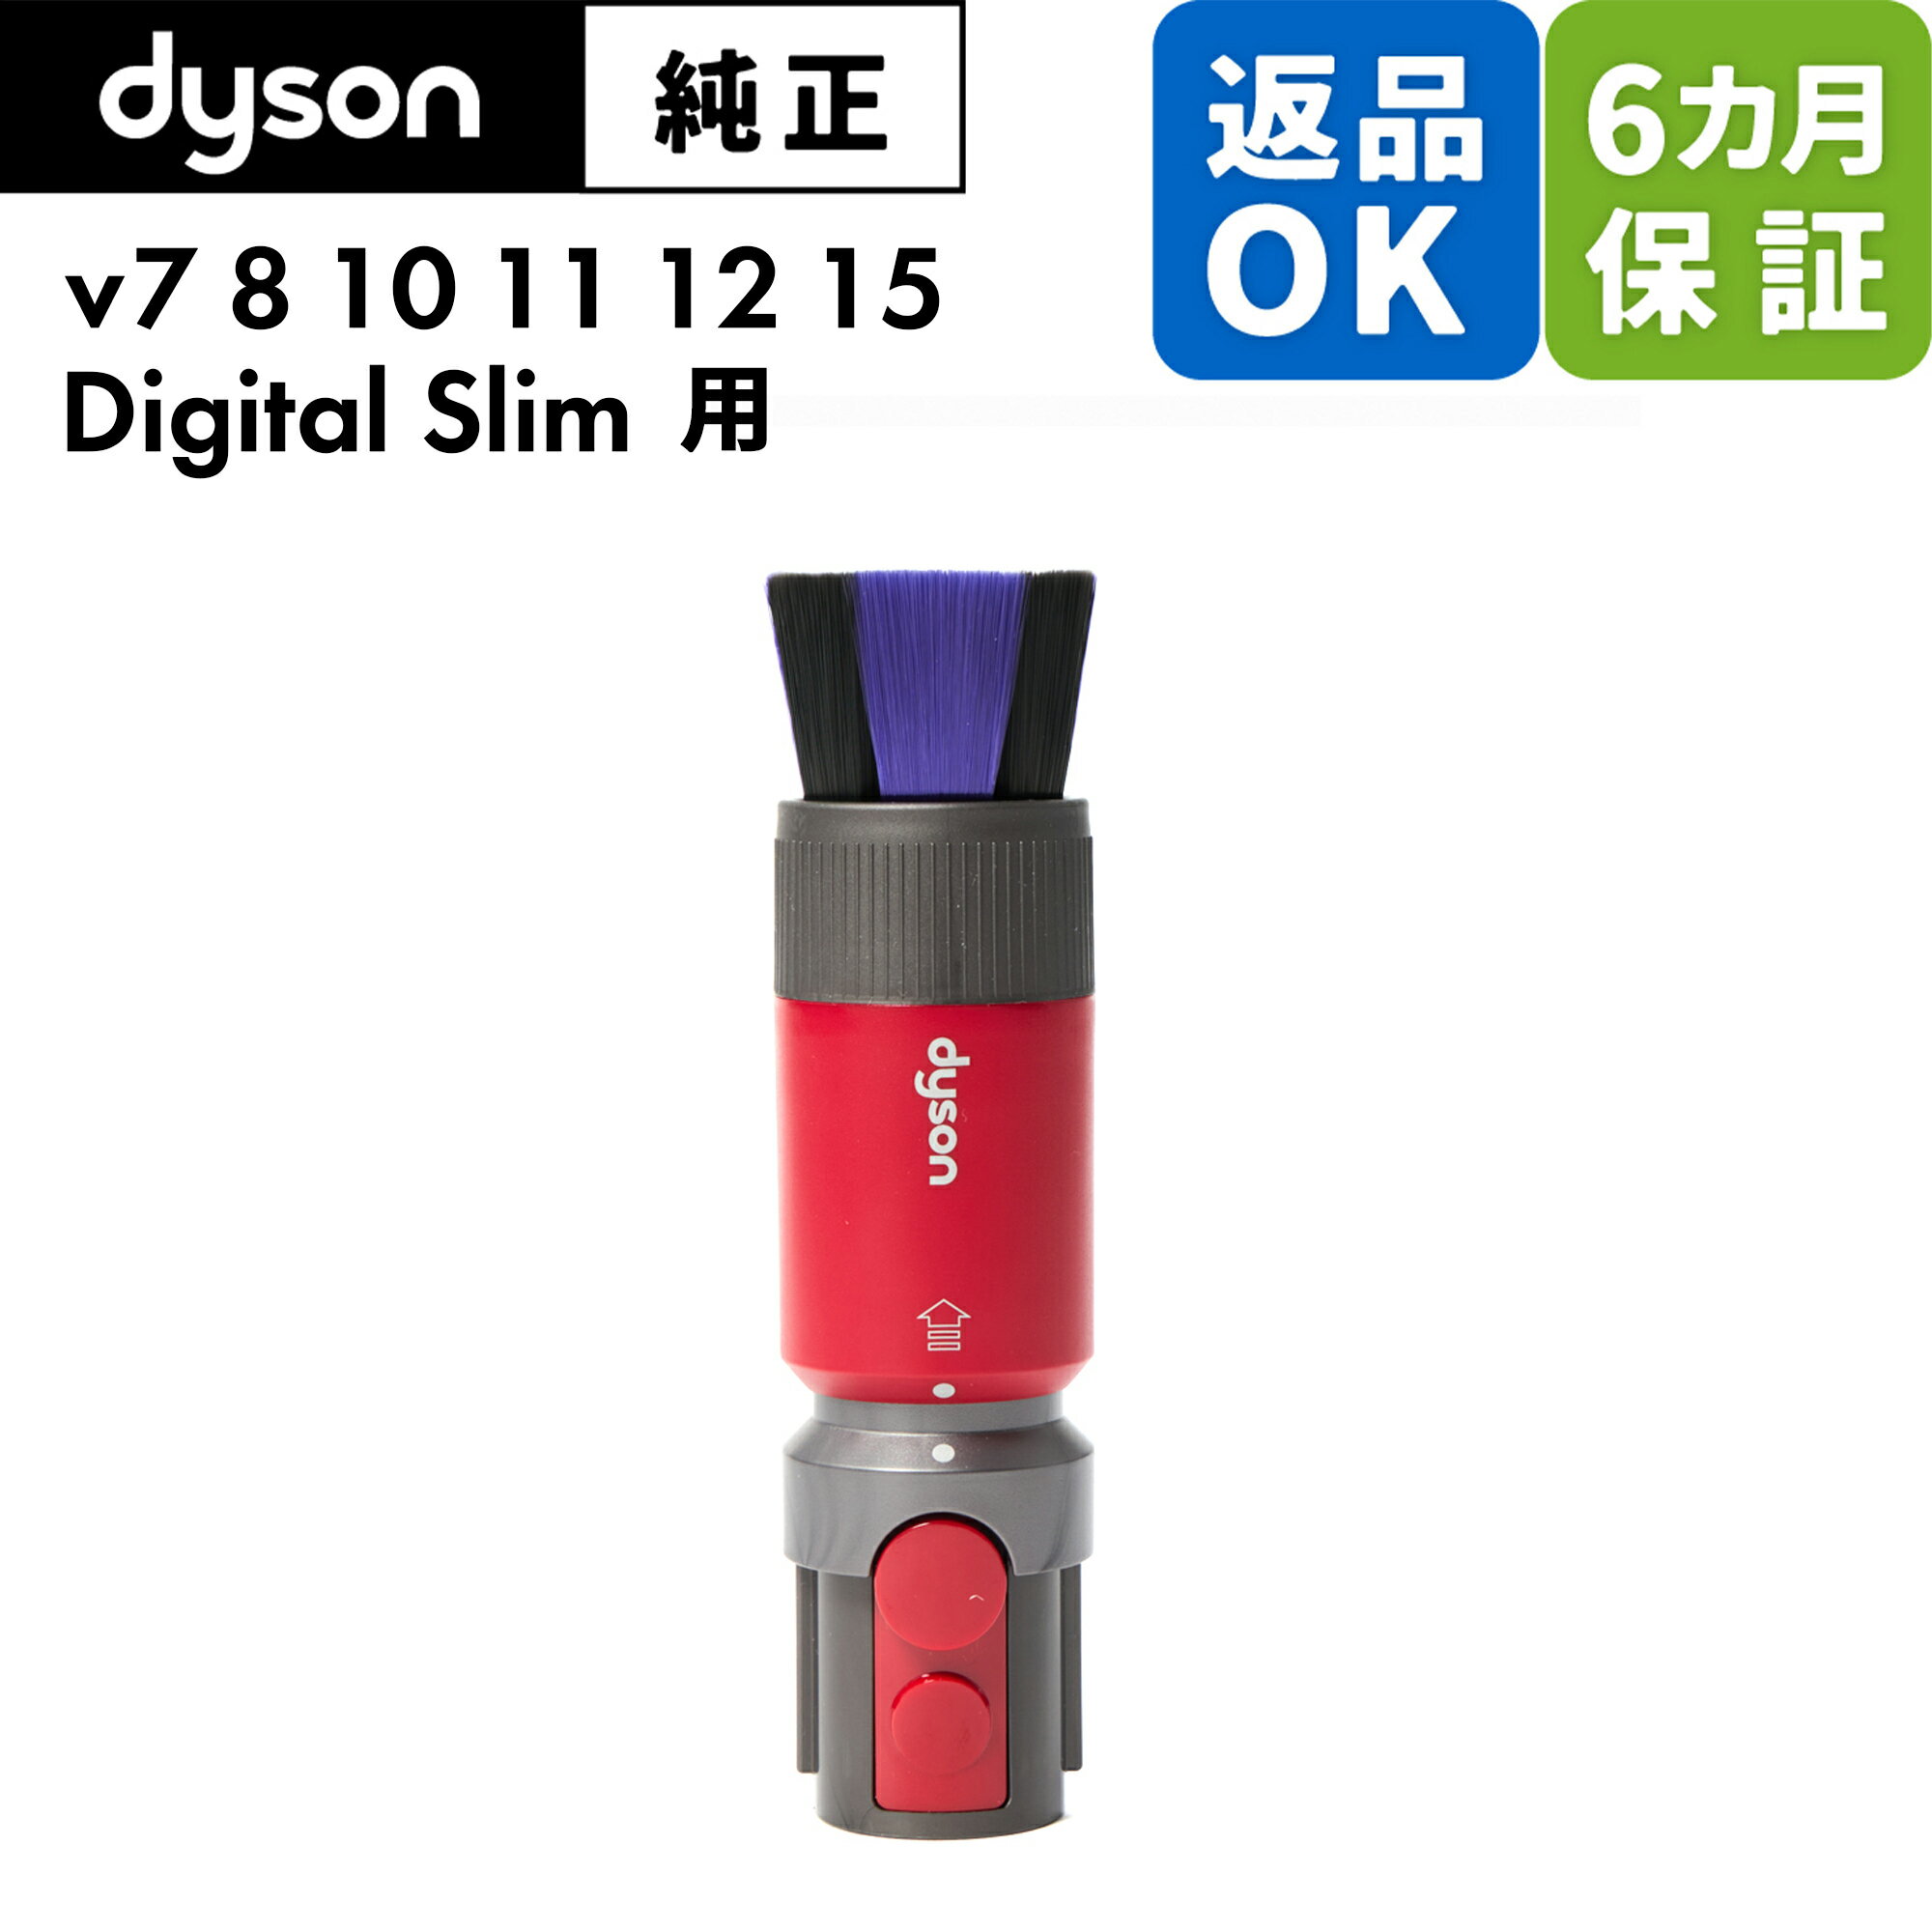 Dyson ダイソン 純正 パーツ スクラッチフリーソフトブラシ V7 V8 V10 V11 V12 V15 Digital Slim 適合 モデル 掃除機 部品 交換